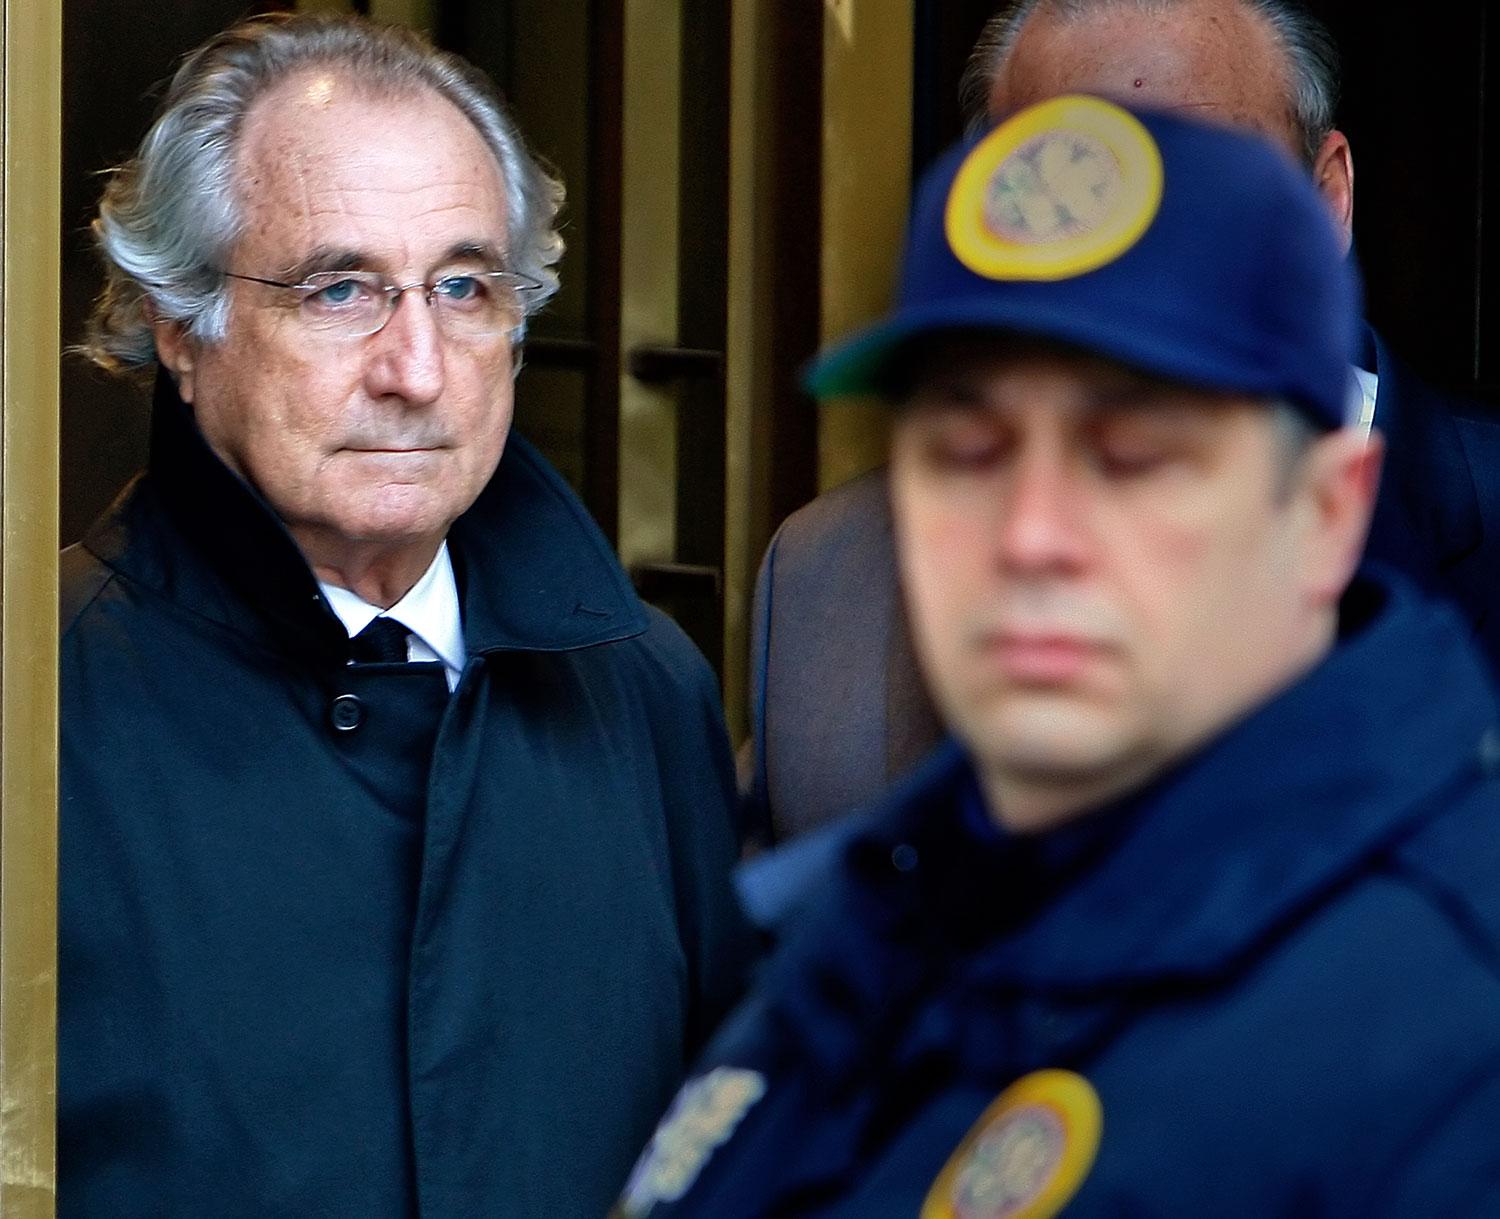 Bernard Madoff vállalata a világ legnagyobb csalását követte el